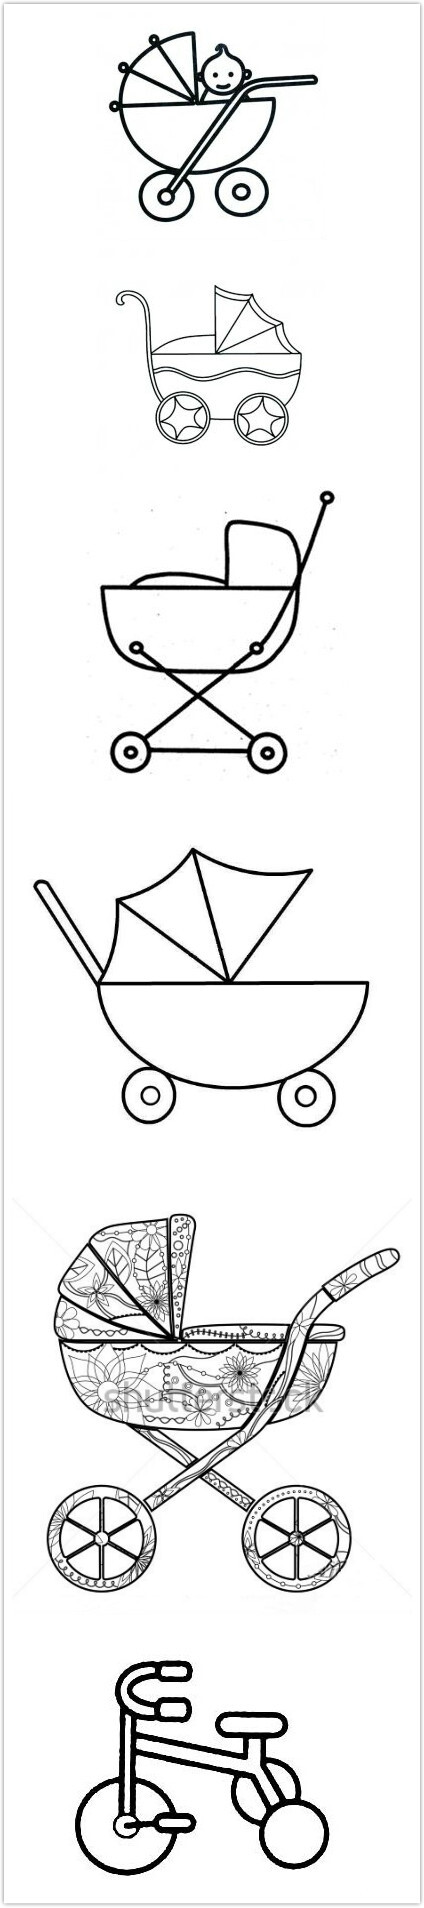 简笔画 婴儿车